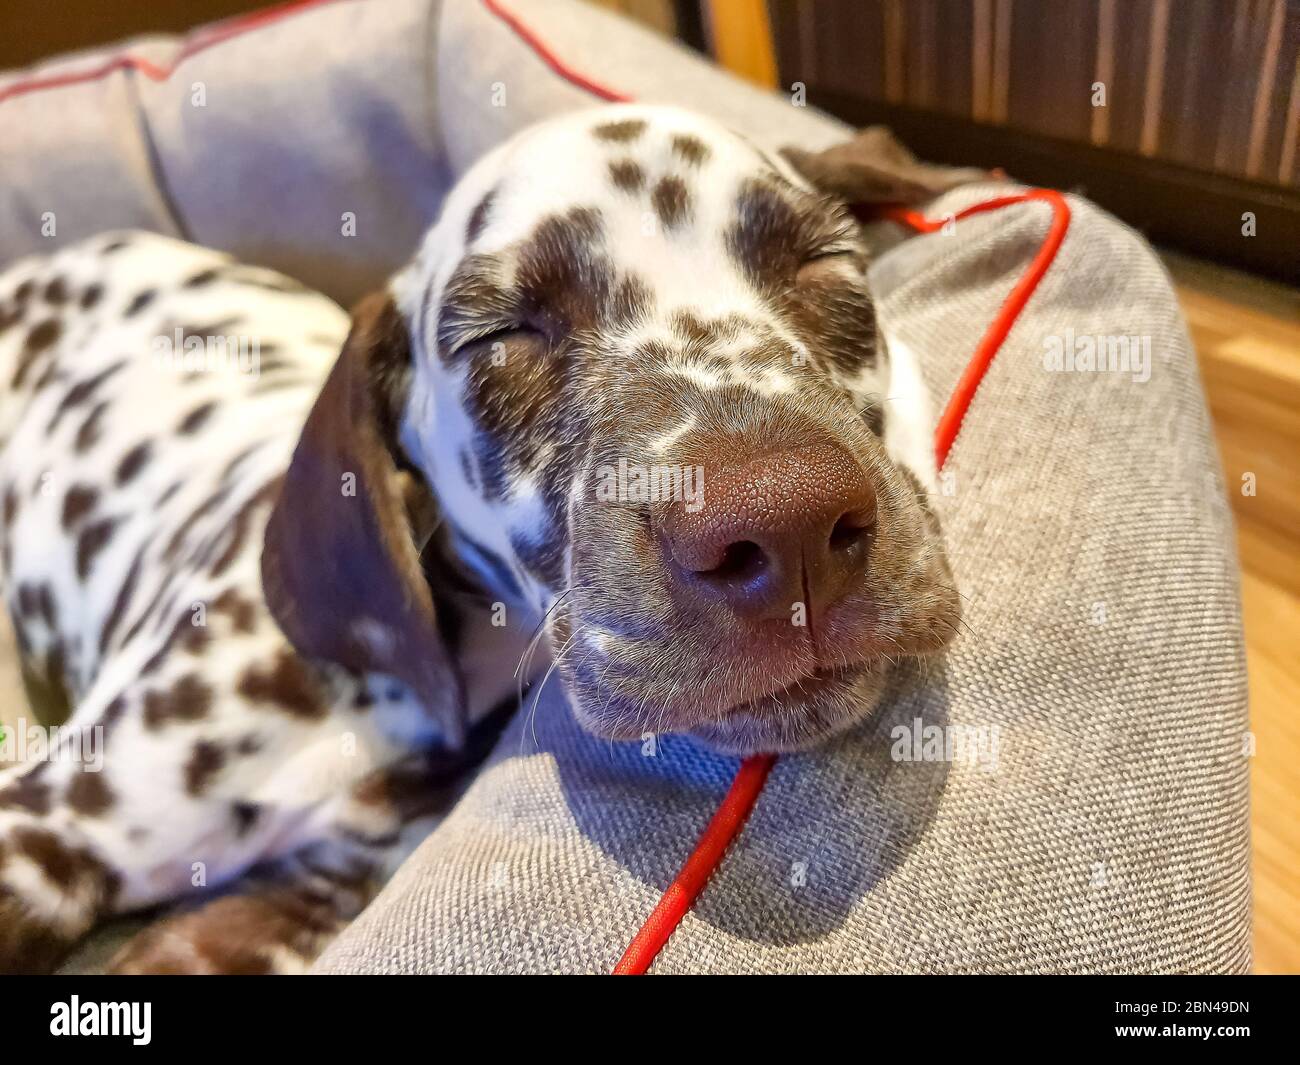 Mon chien, chance, renifler l'appareil photo avec son parfait froid,  humide, gros, nez brun et les yeux fermés.le chien dalmatien chocolat brun  dort. En veille Photo Stock - Alamy